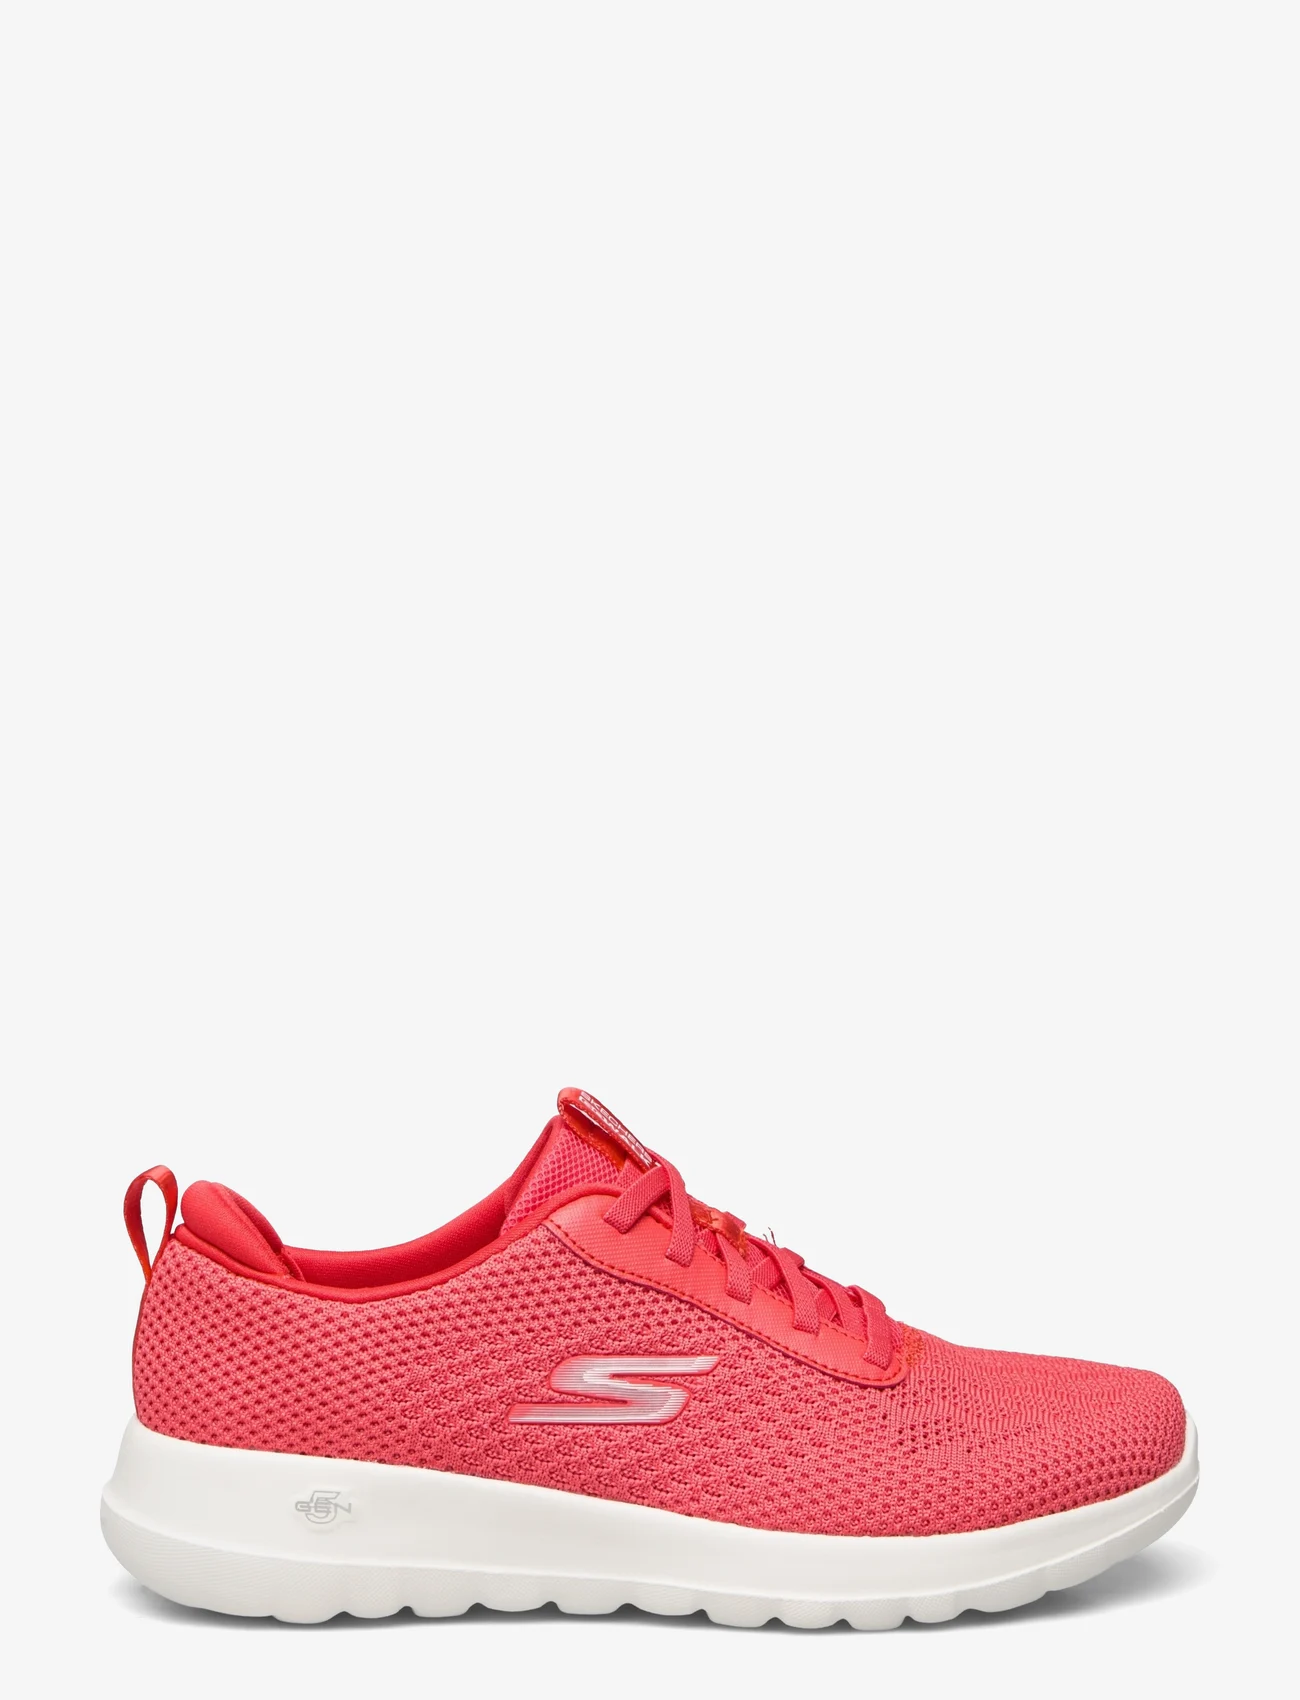 Skechers - Womens Go Walk Joy - Wonderful Spring - niedrige sneakers - red red - 1